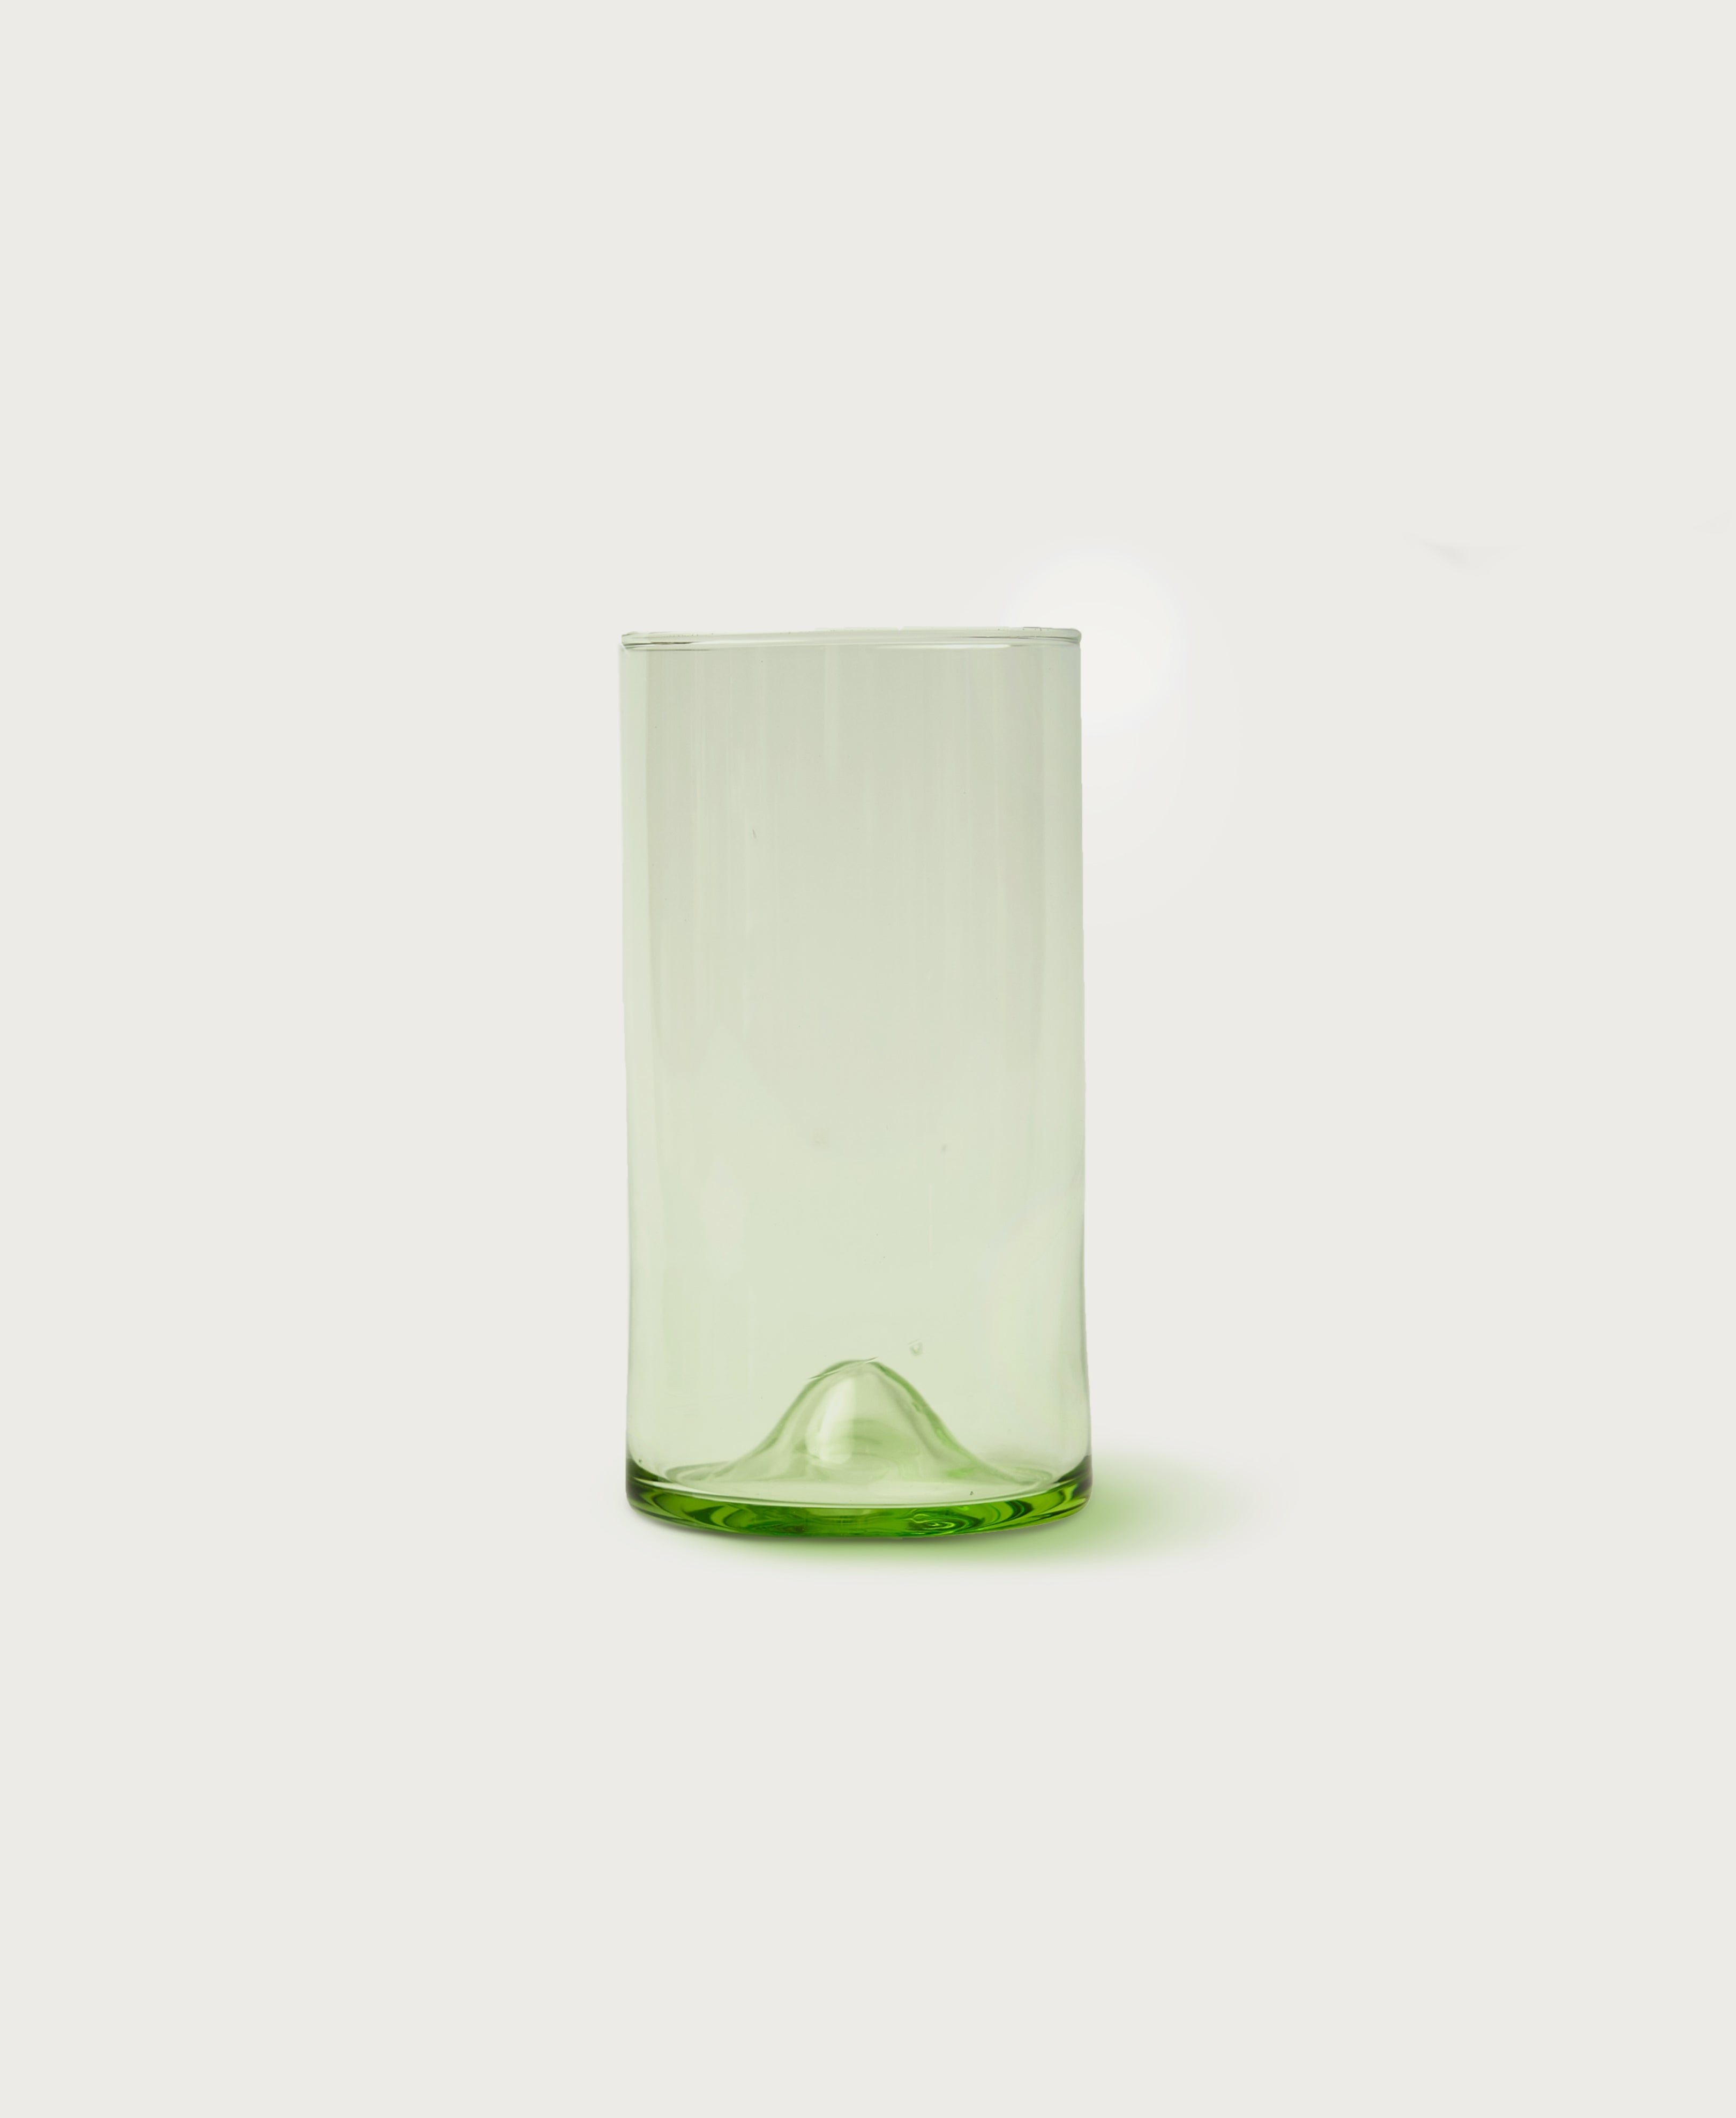 https://ilbucovita.com/cdn/shop/products/il-Buco-vita-pienza-tall-glass-green-hero_4b9d378d-fc99-4146-9529-2e5f6be0c91d.jpg?v=1671036541